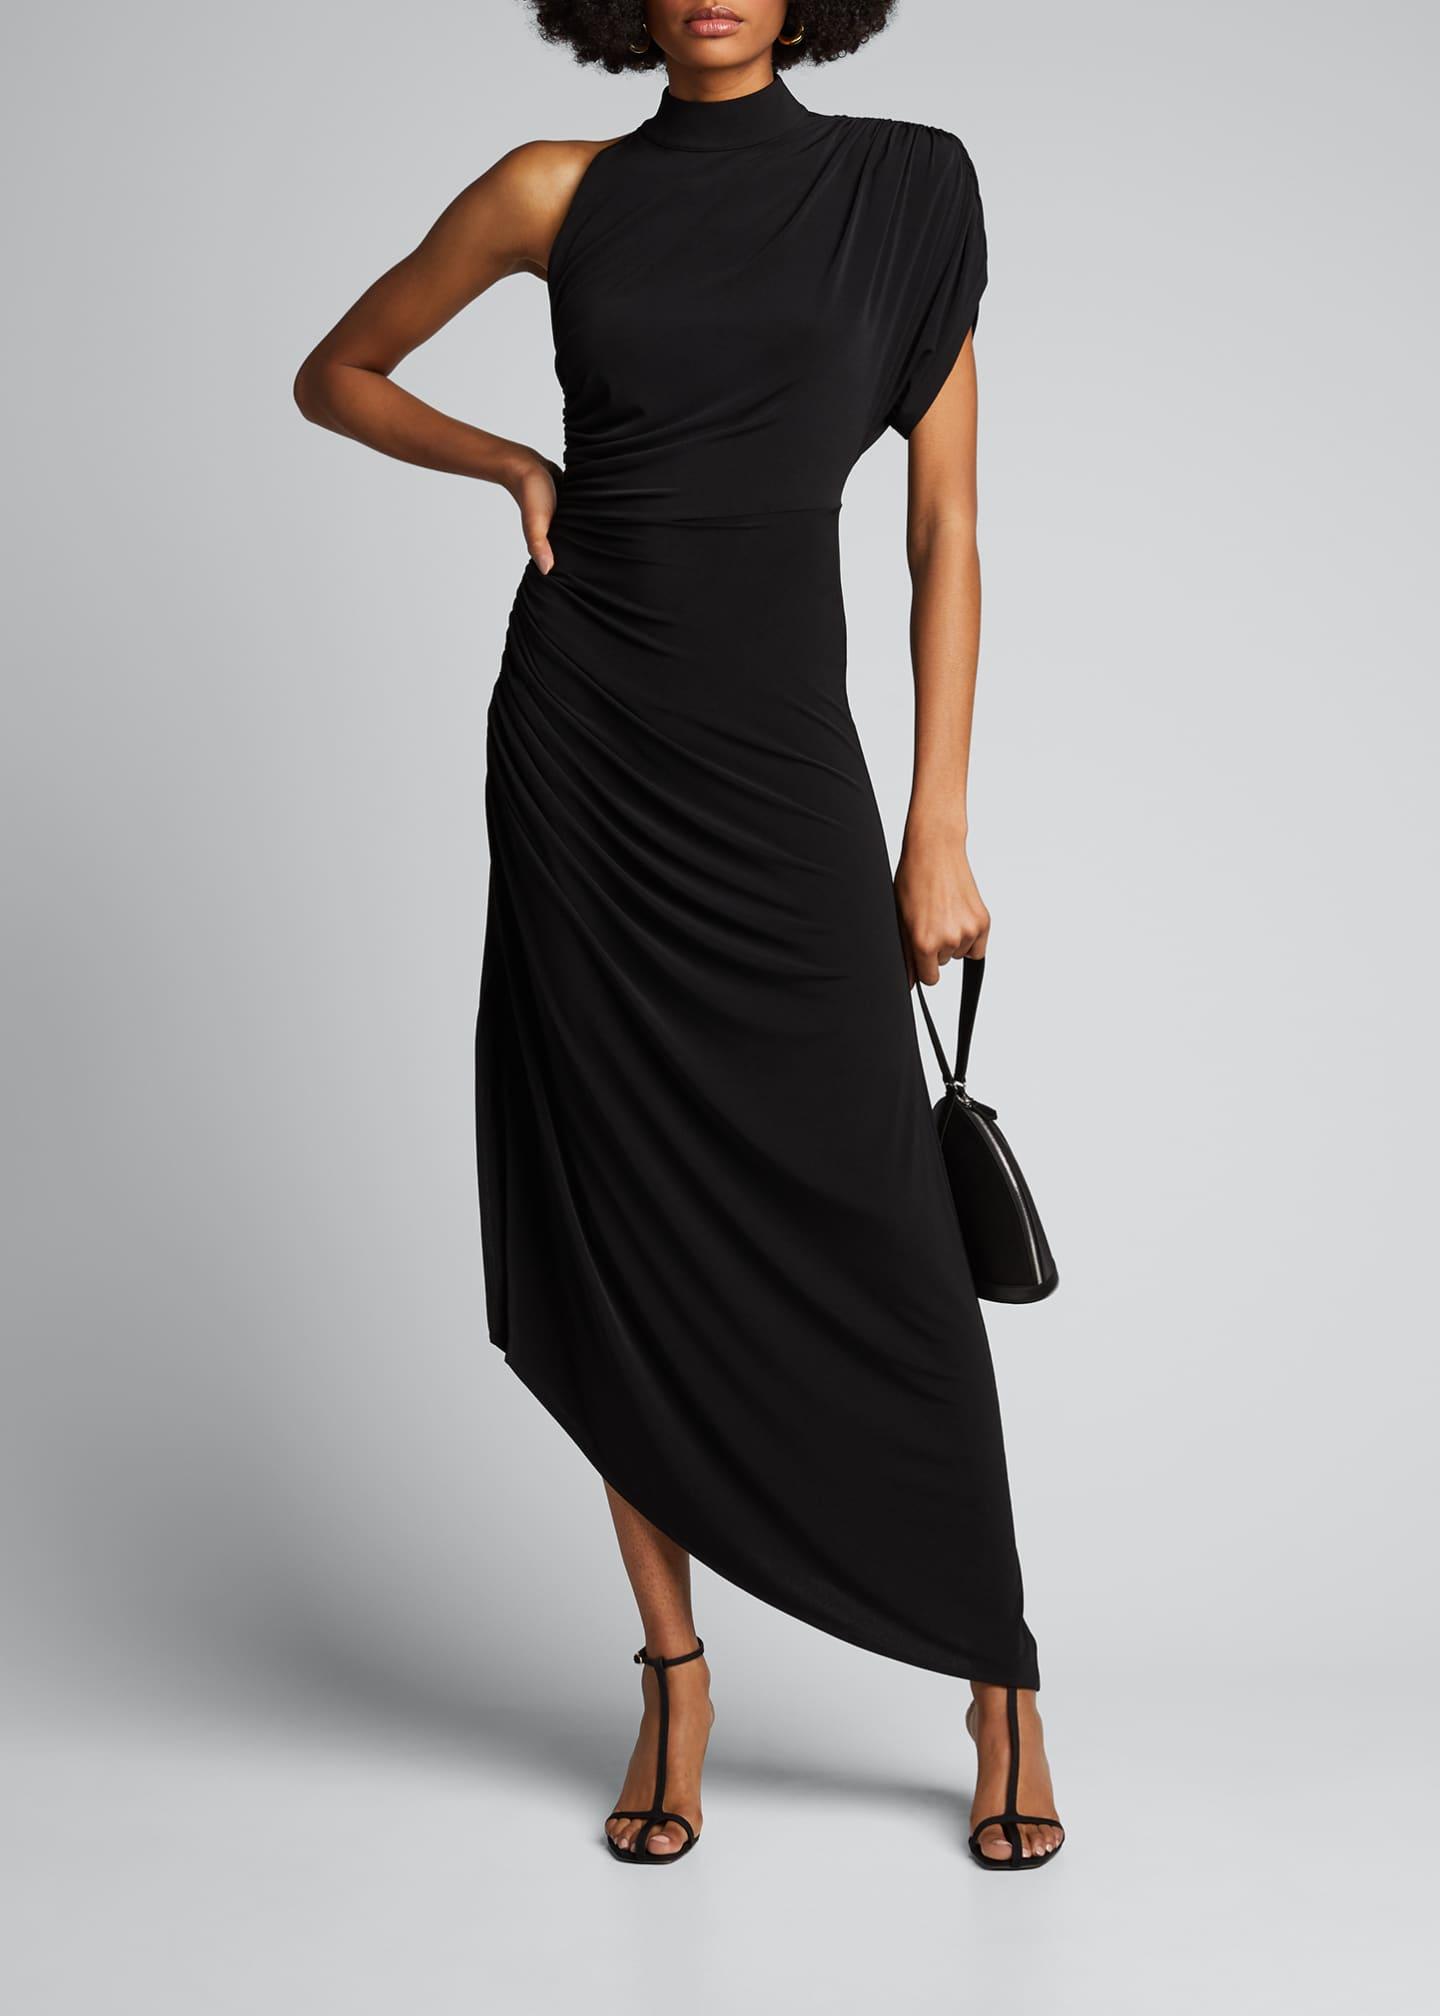 reformation black dresses